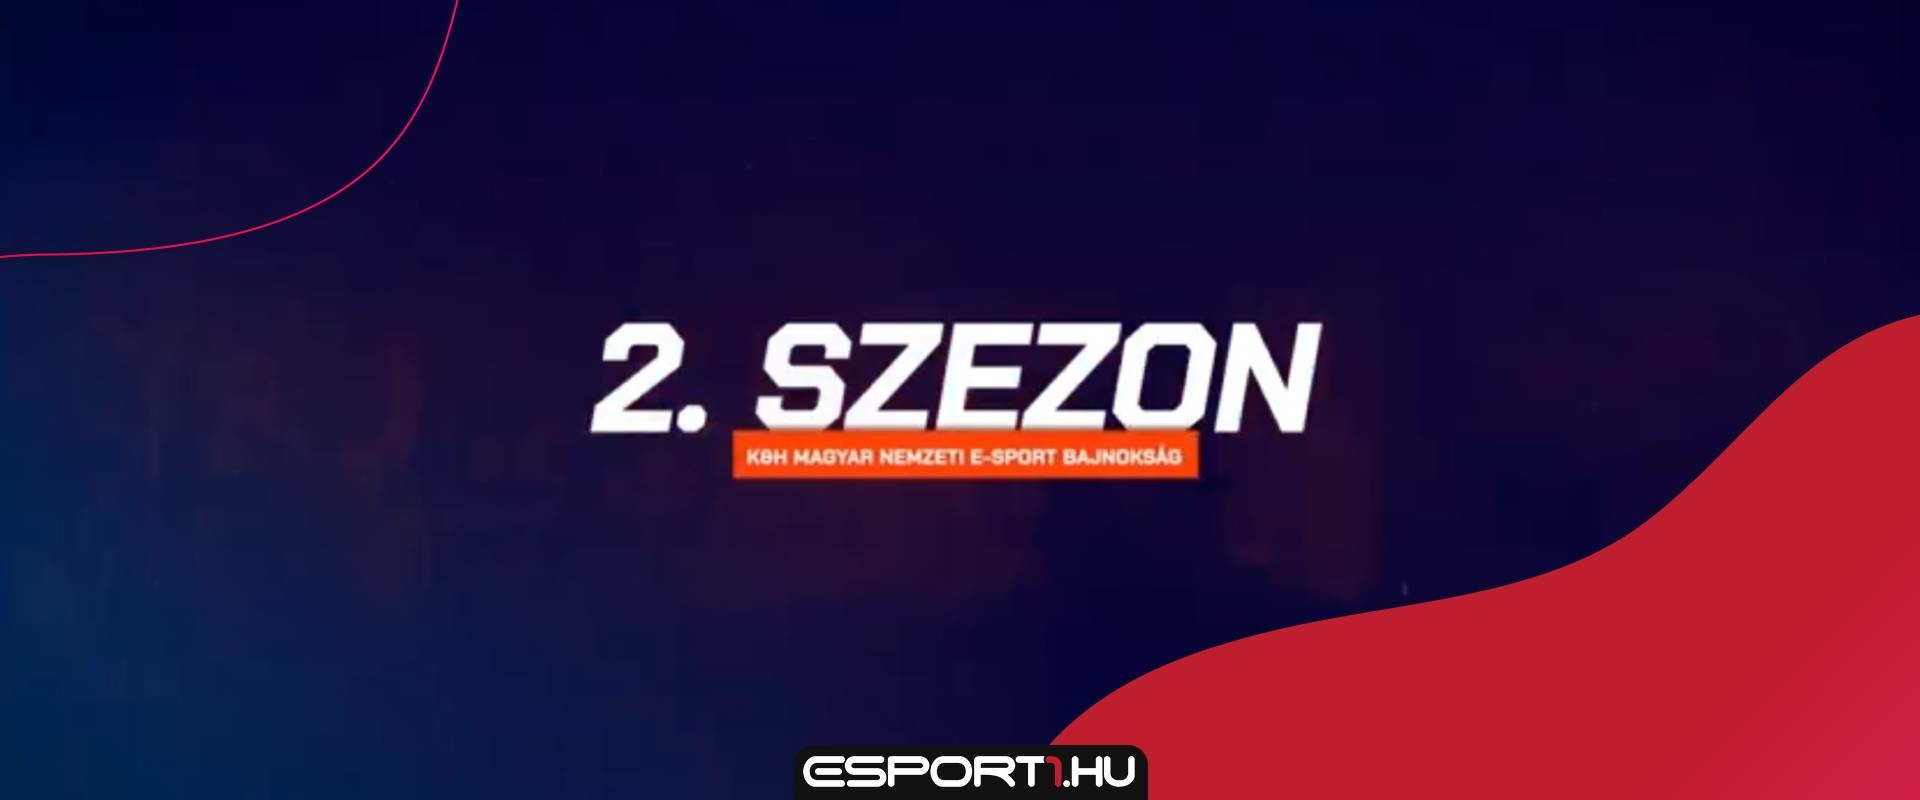 Bejelentették a K&H Magyar Nemzeti E-sport Bajnokság 2. szezonját